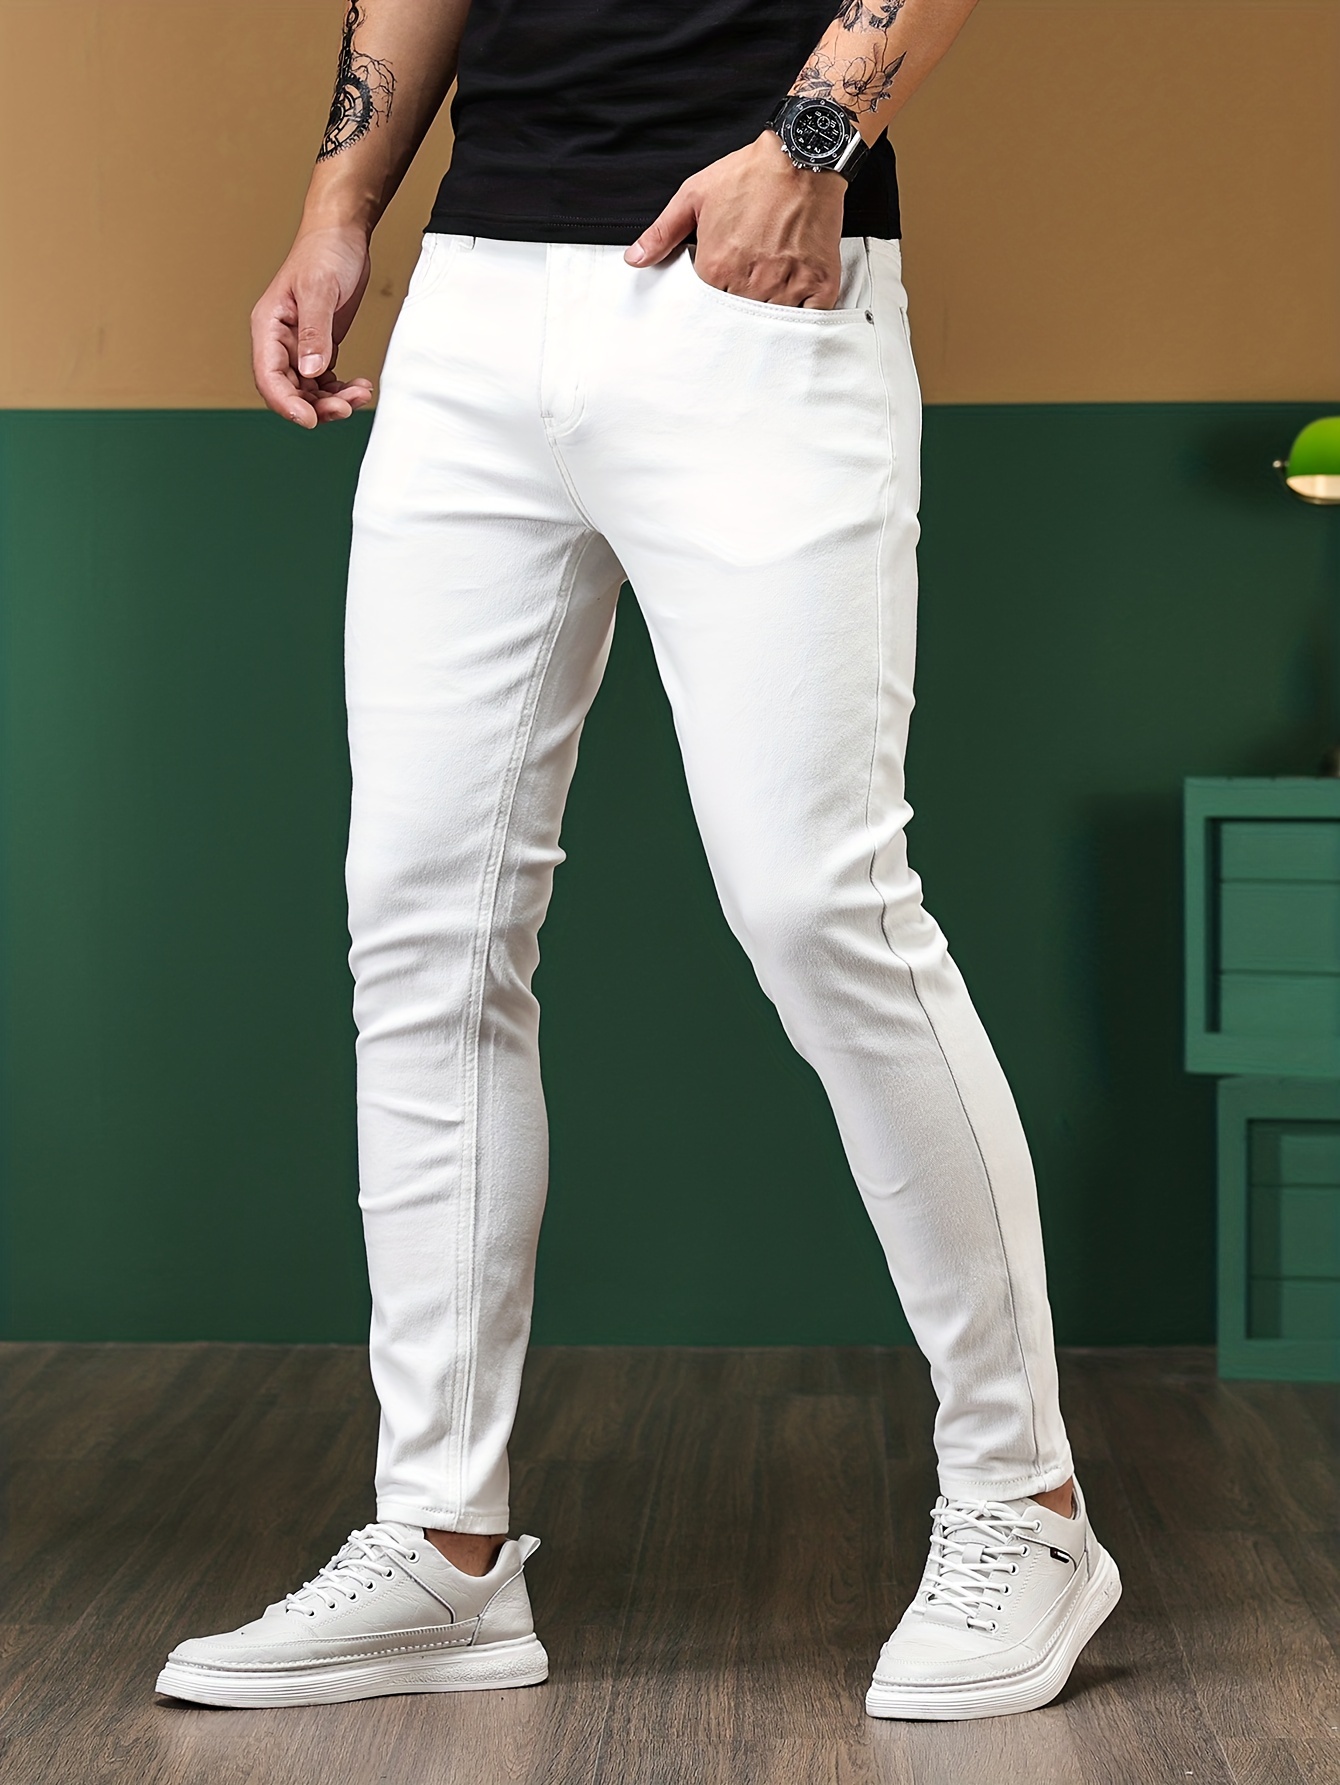 Pantalones blancos para hombre: guía para llevarlos en verano